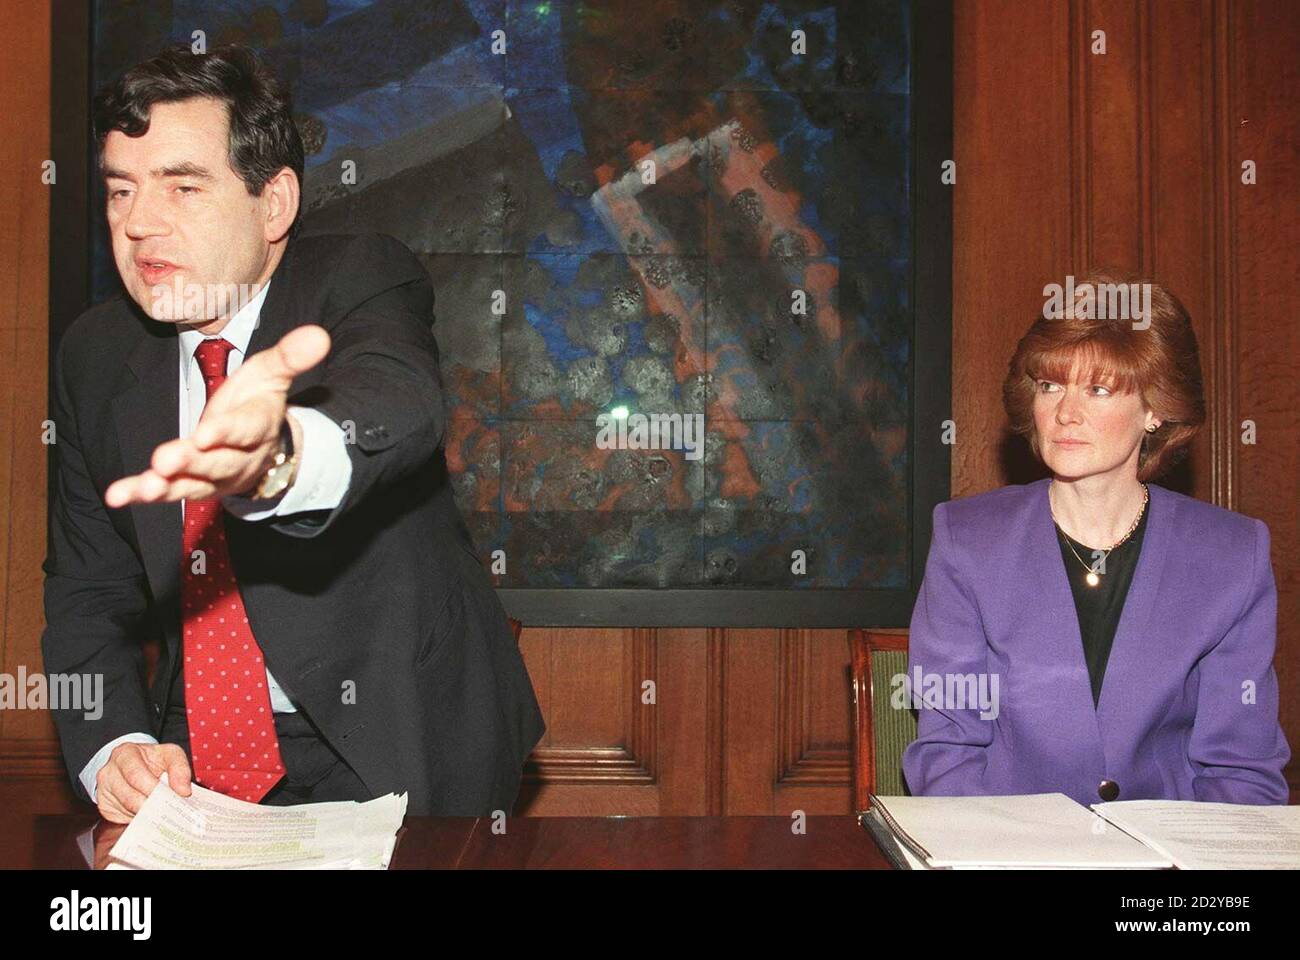 Schatzkanzler und Vorsitzender des Komitees für die Diana, Princess of Wales Memorial Fund, Gordon Brown mit Lady Sarah McCorquodale während der ersten Ausschusssitzung in der Residenz der Kanzlerin Downing Street. Stockfoto